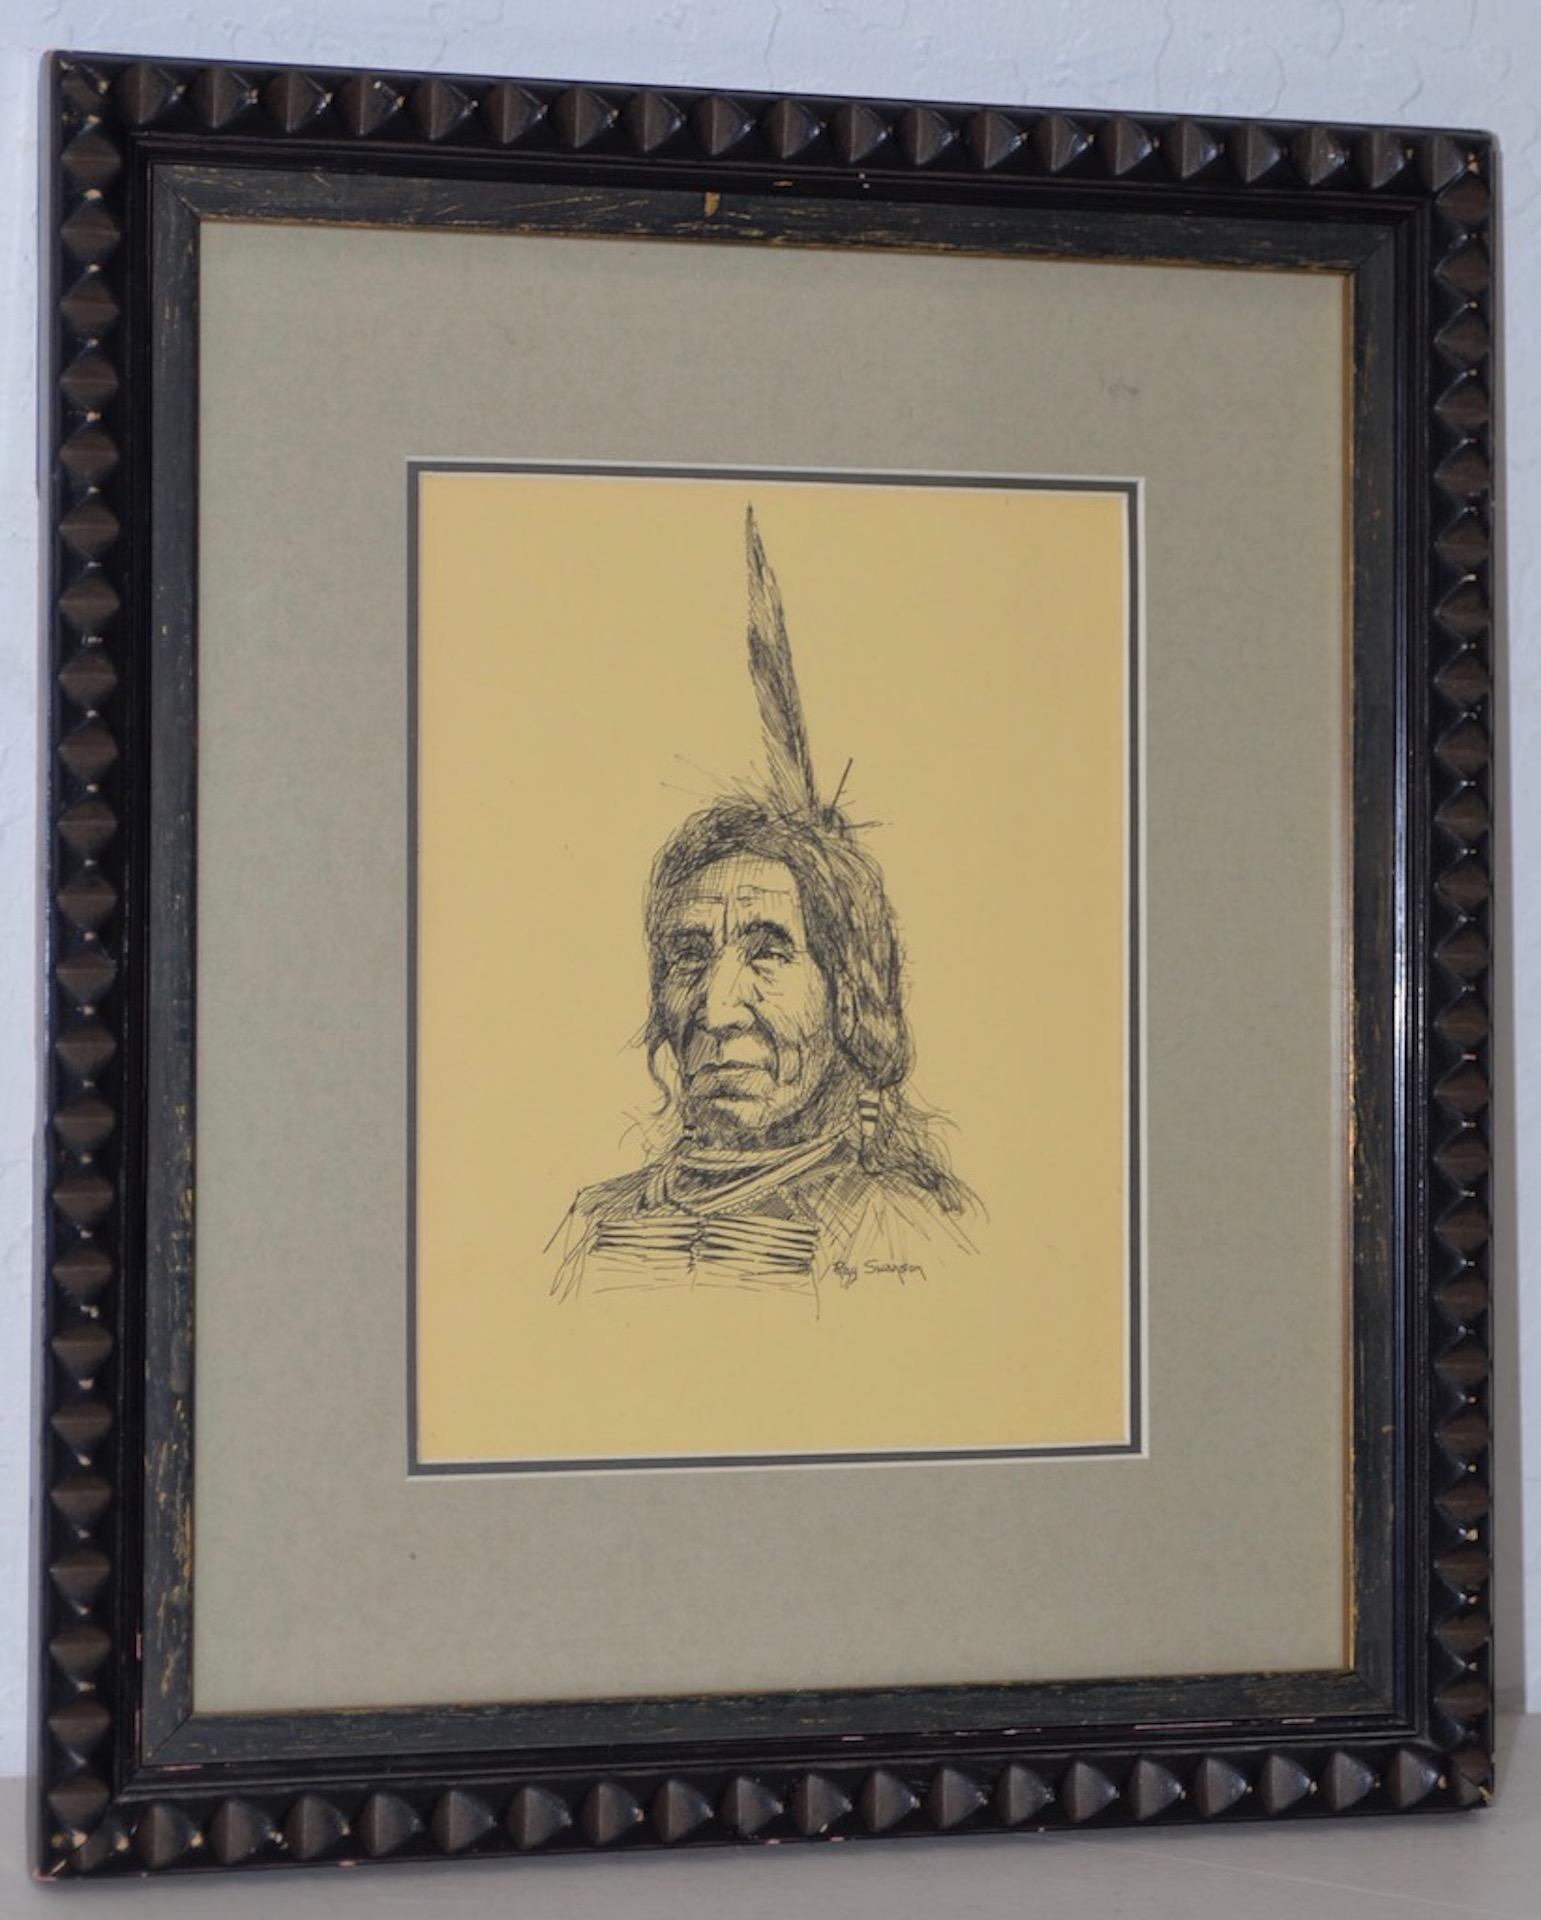 Ray Swanson (1937-2004) "Amérindien" Original plume et encre c.1960s

Beau portrait d'un Indien d'Amérique par l'artiste occidental Ray Swanson.

Dimensions 6" x 8". Le cadre mesure 12" x 14".

Signé en bas à droite. Très bon état.

Membre des